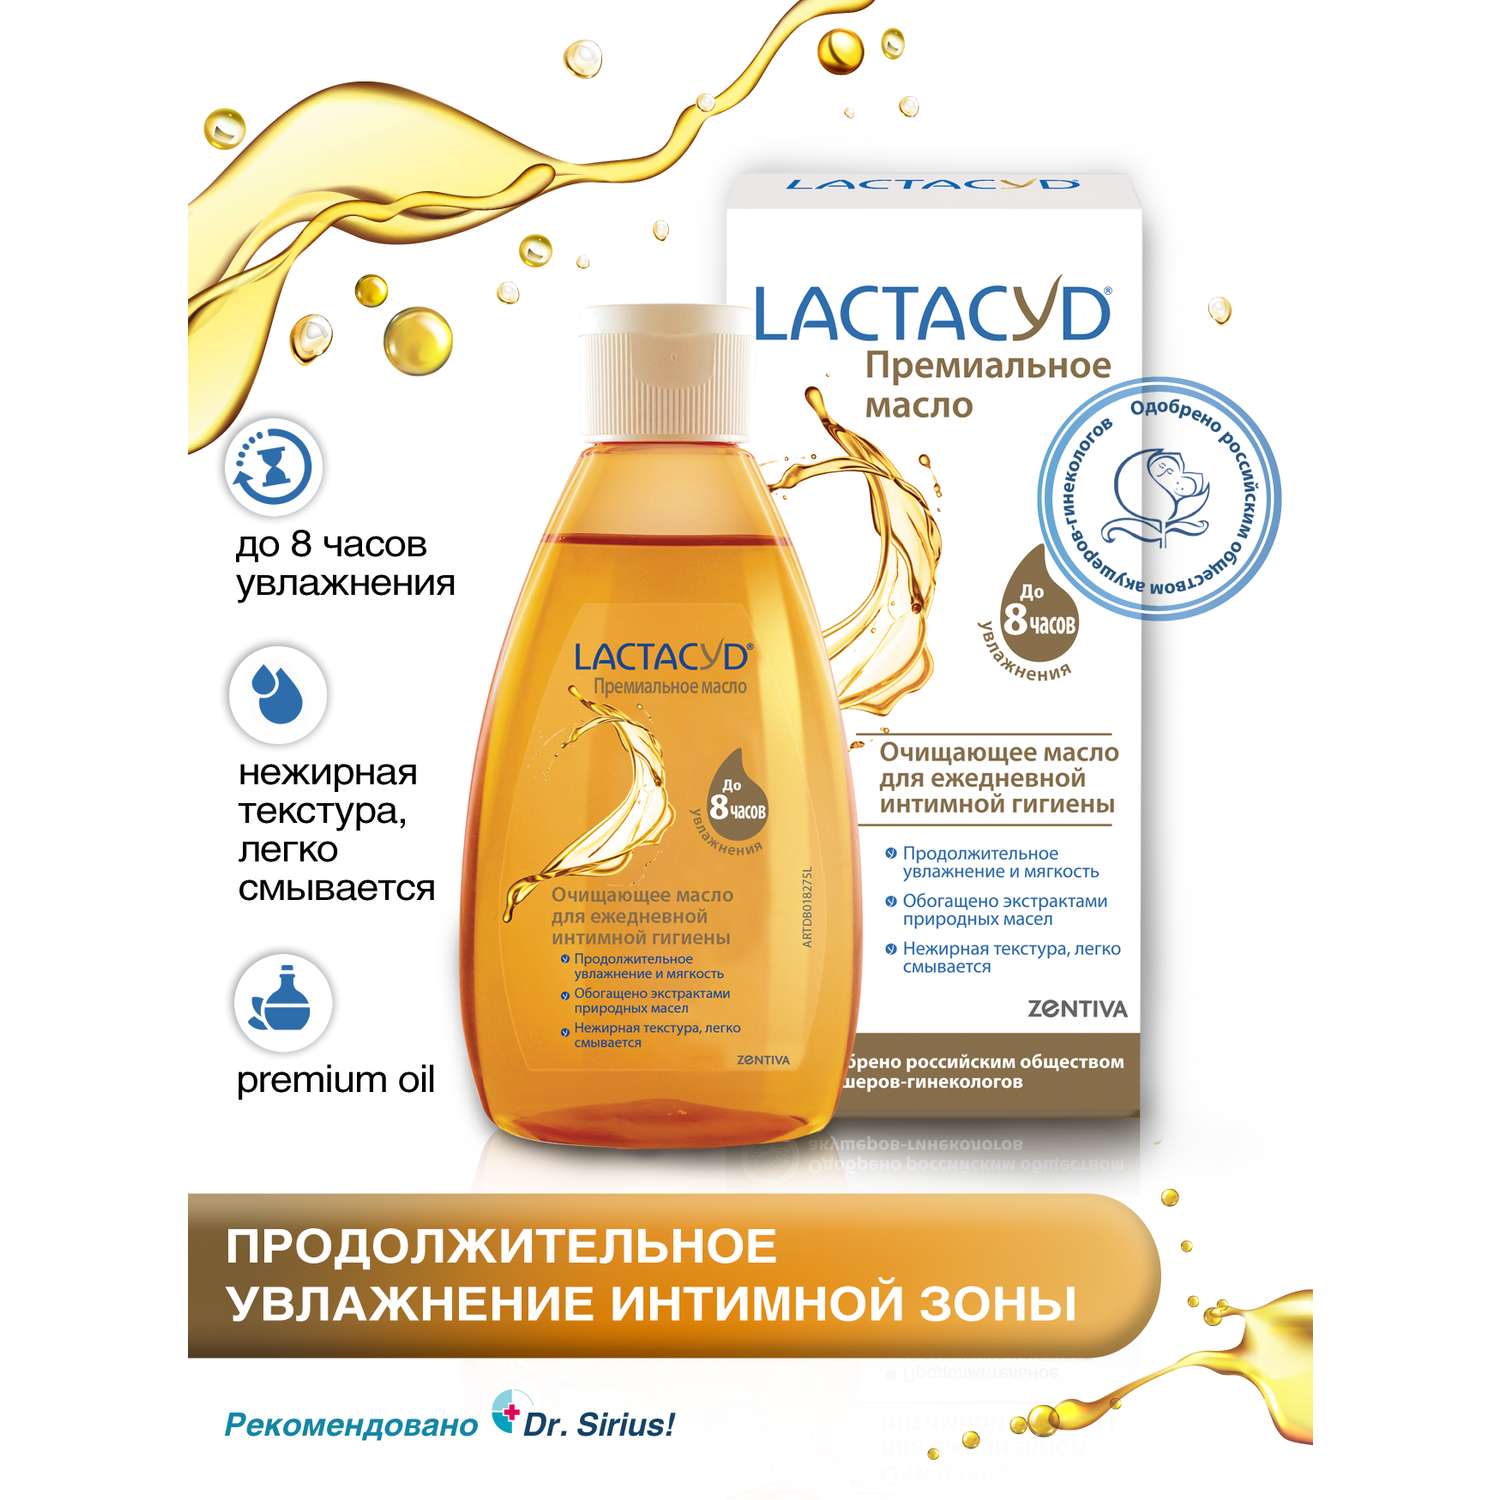 Очищающее масло Lactacyd для ежедневной интимной гигиены - фото 2